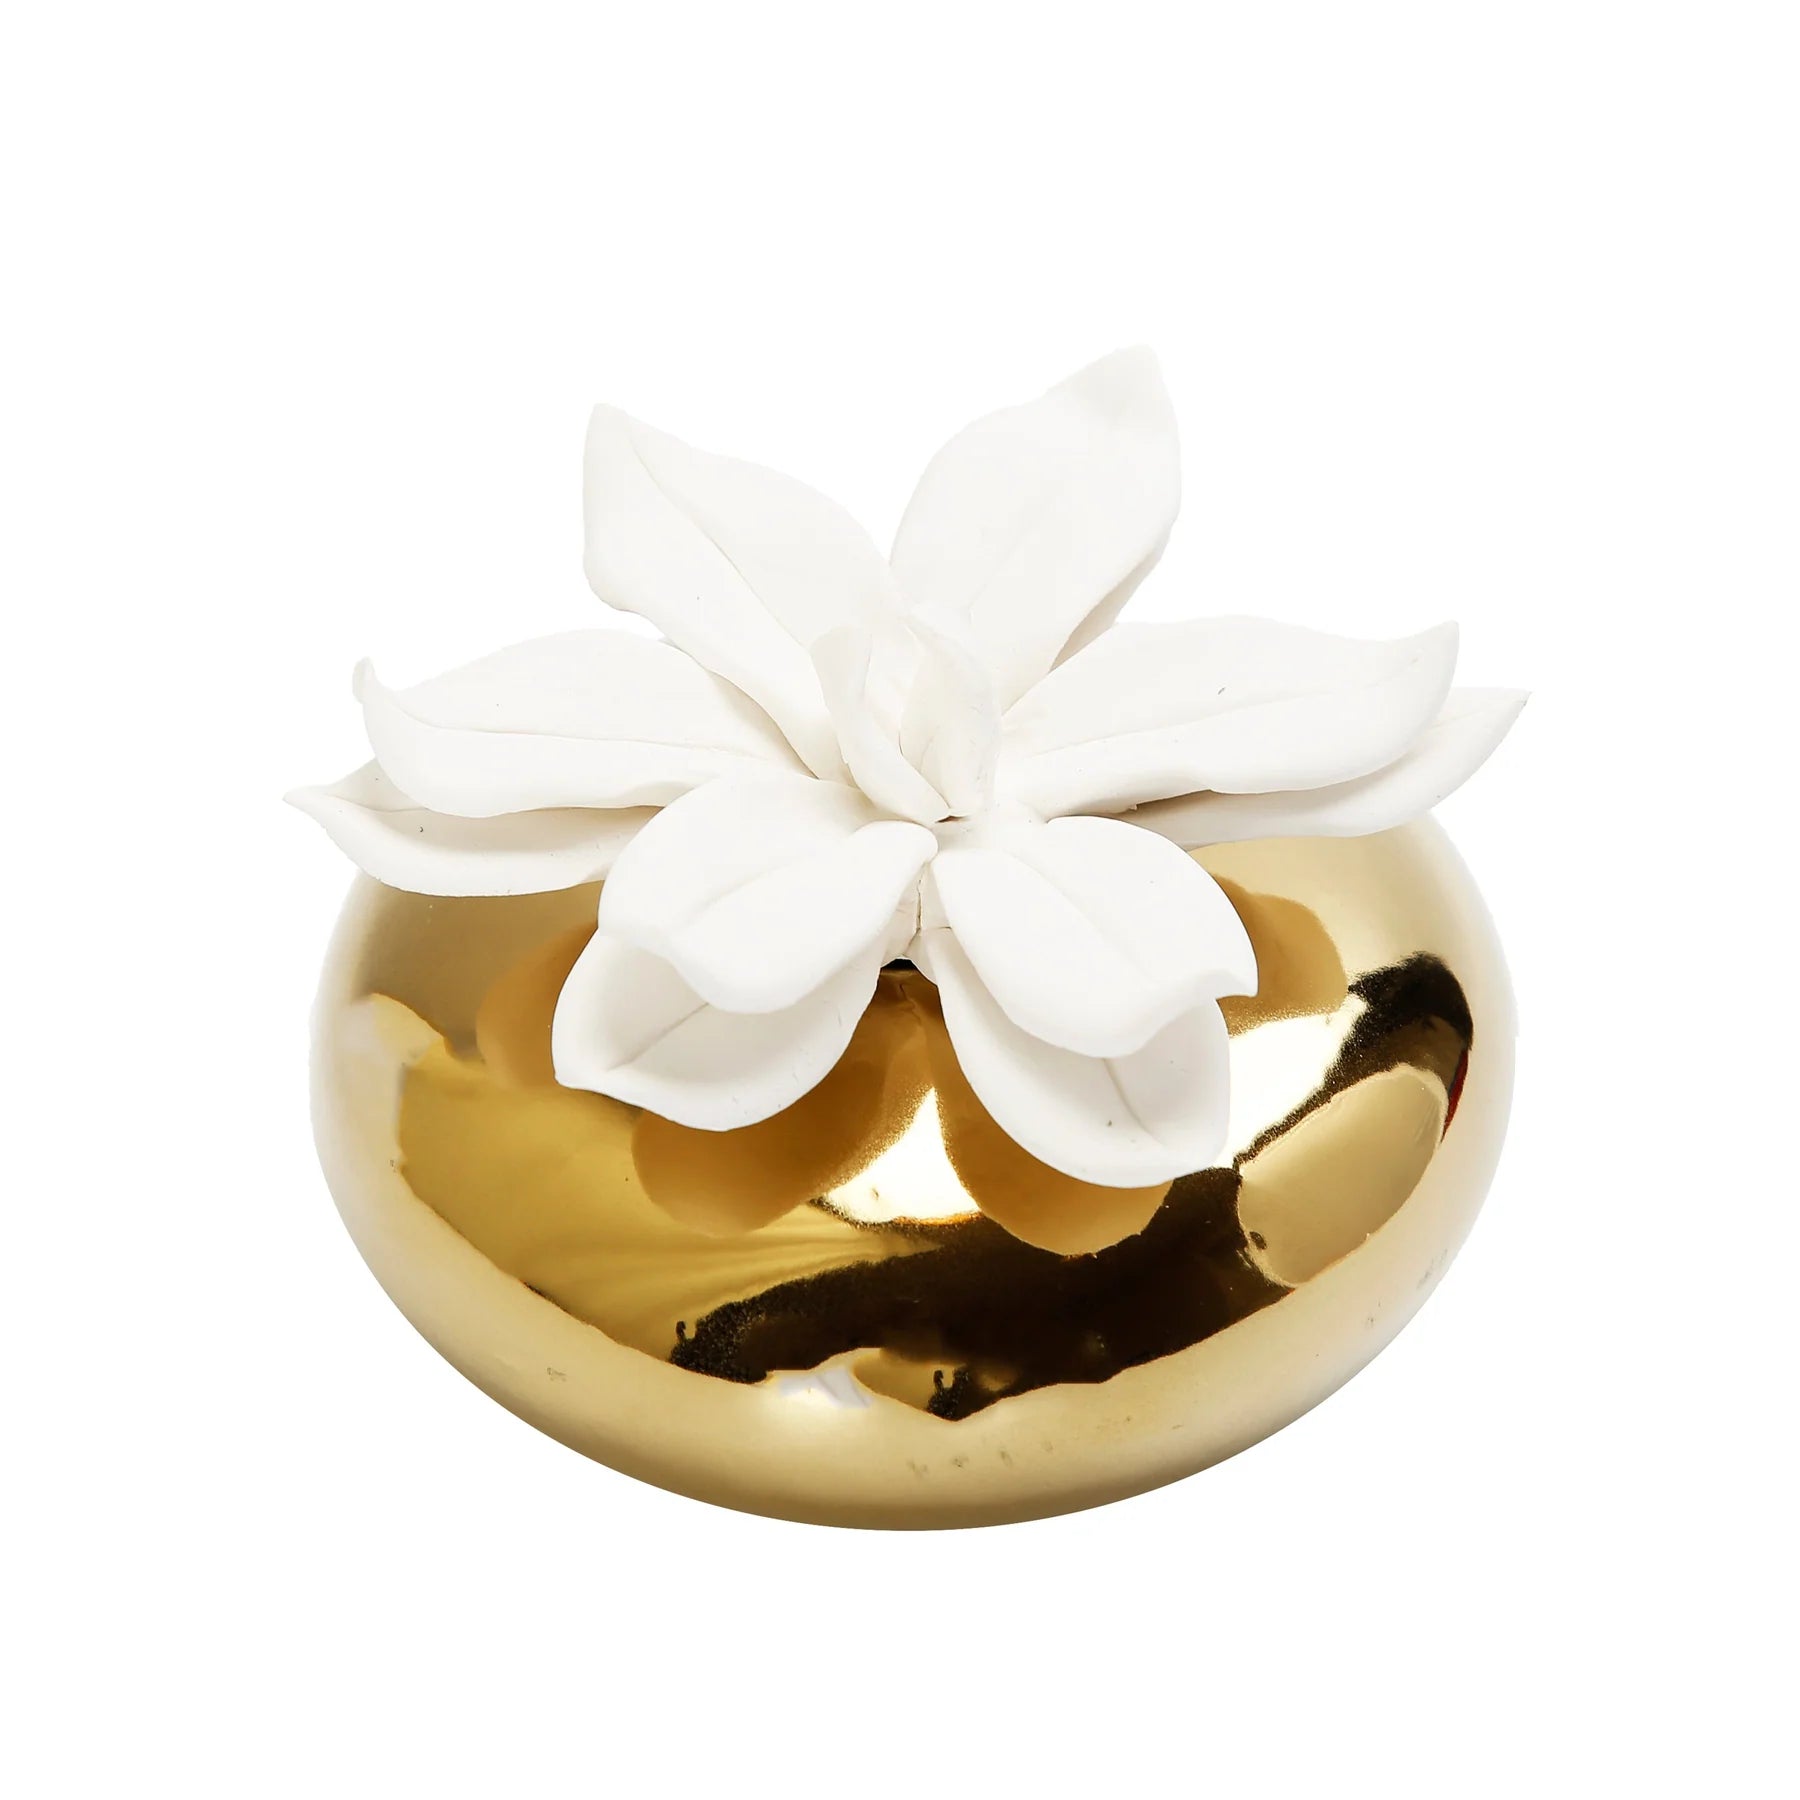 Diffuseur circulaire en or avec fleur blanche dimensionnelle, arôme « Iris et Rose »